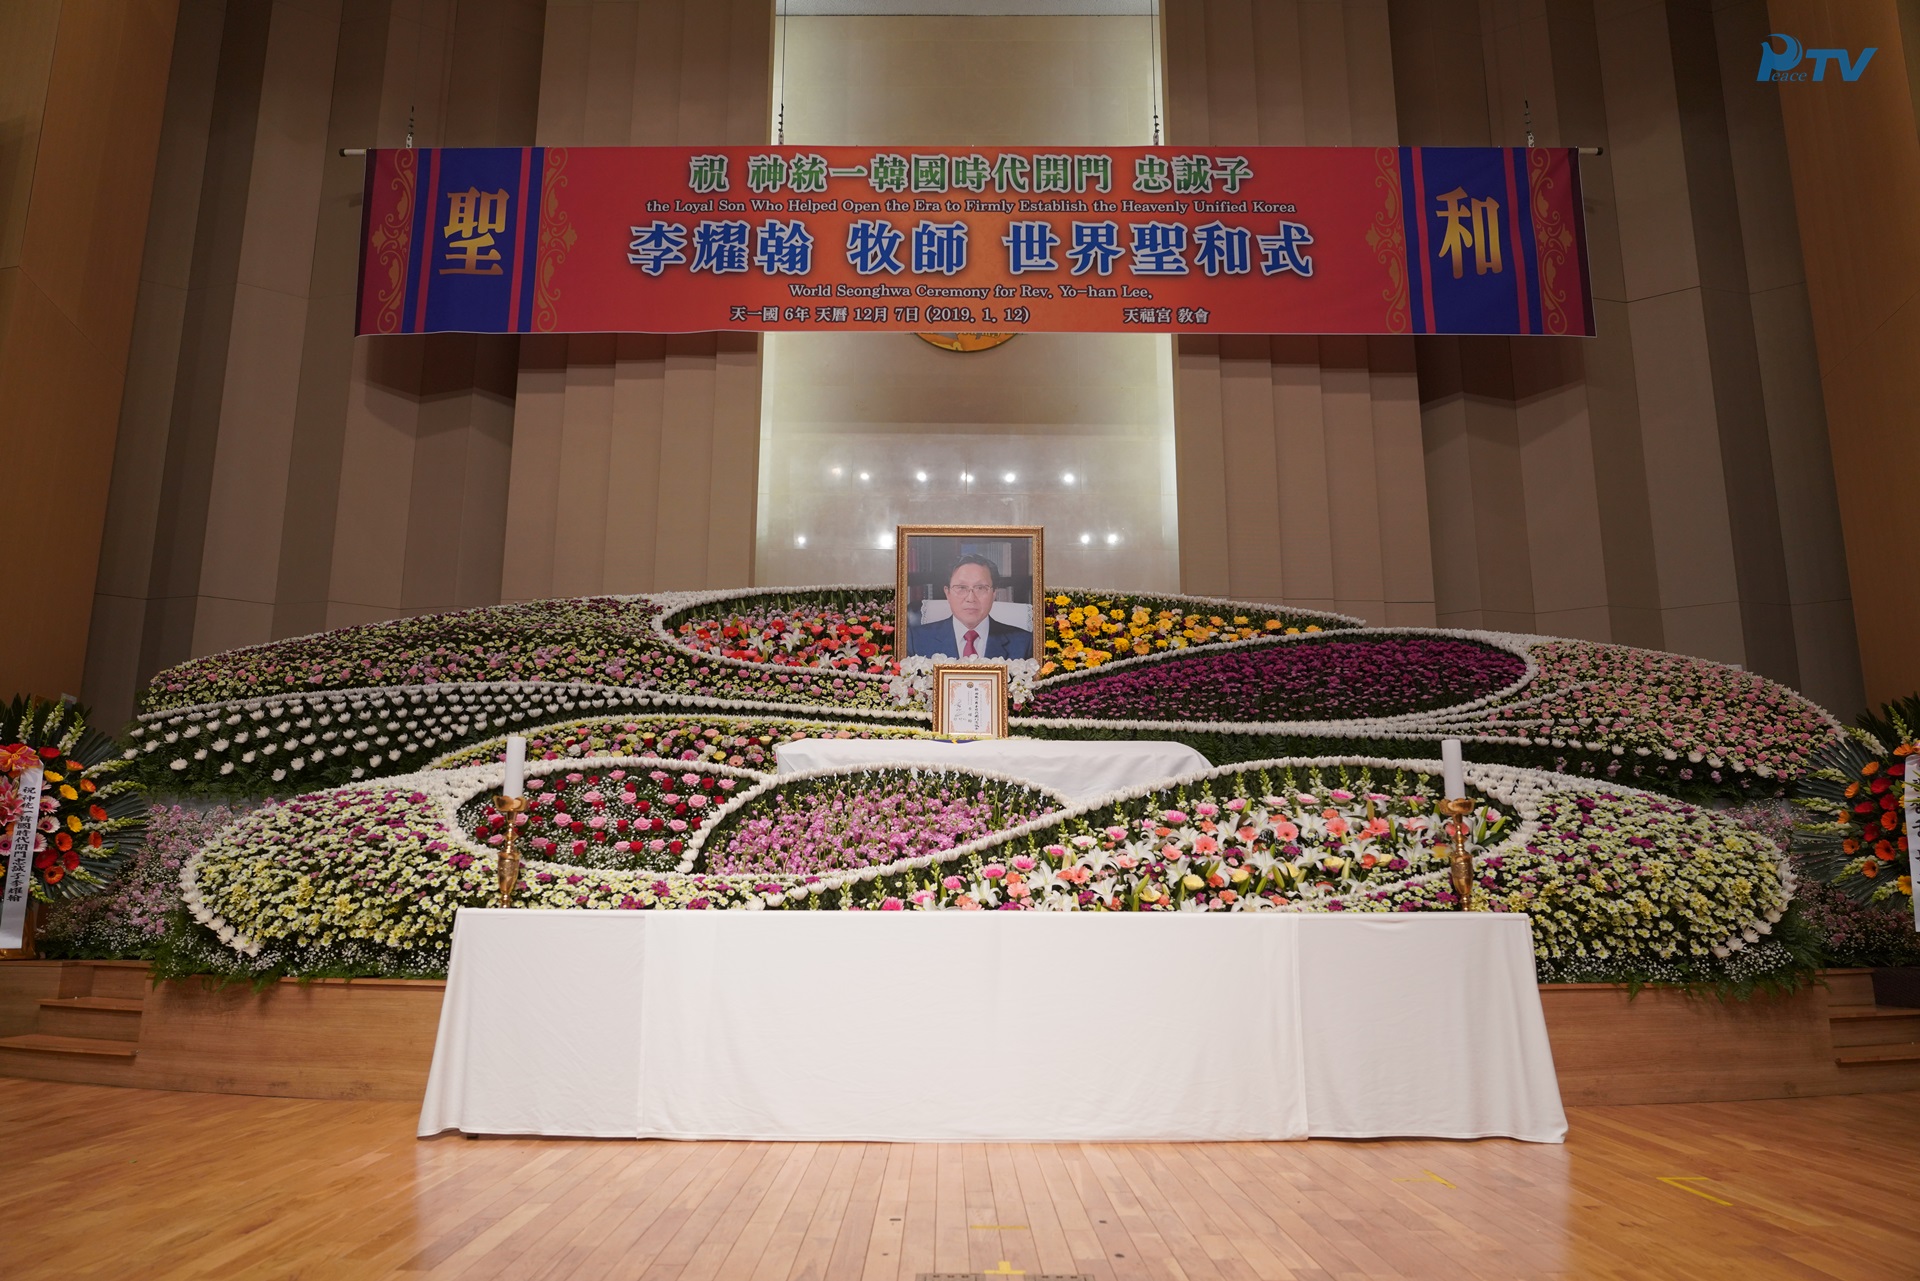 祝 神統一韓国時代開門 忠誠子 李耀翰牧師 世界聖和式  (2019.1.12) 天福宮教会